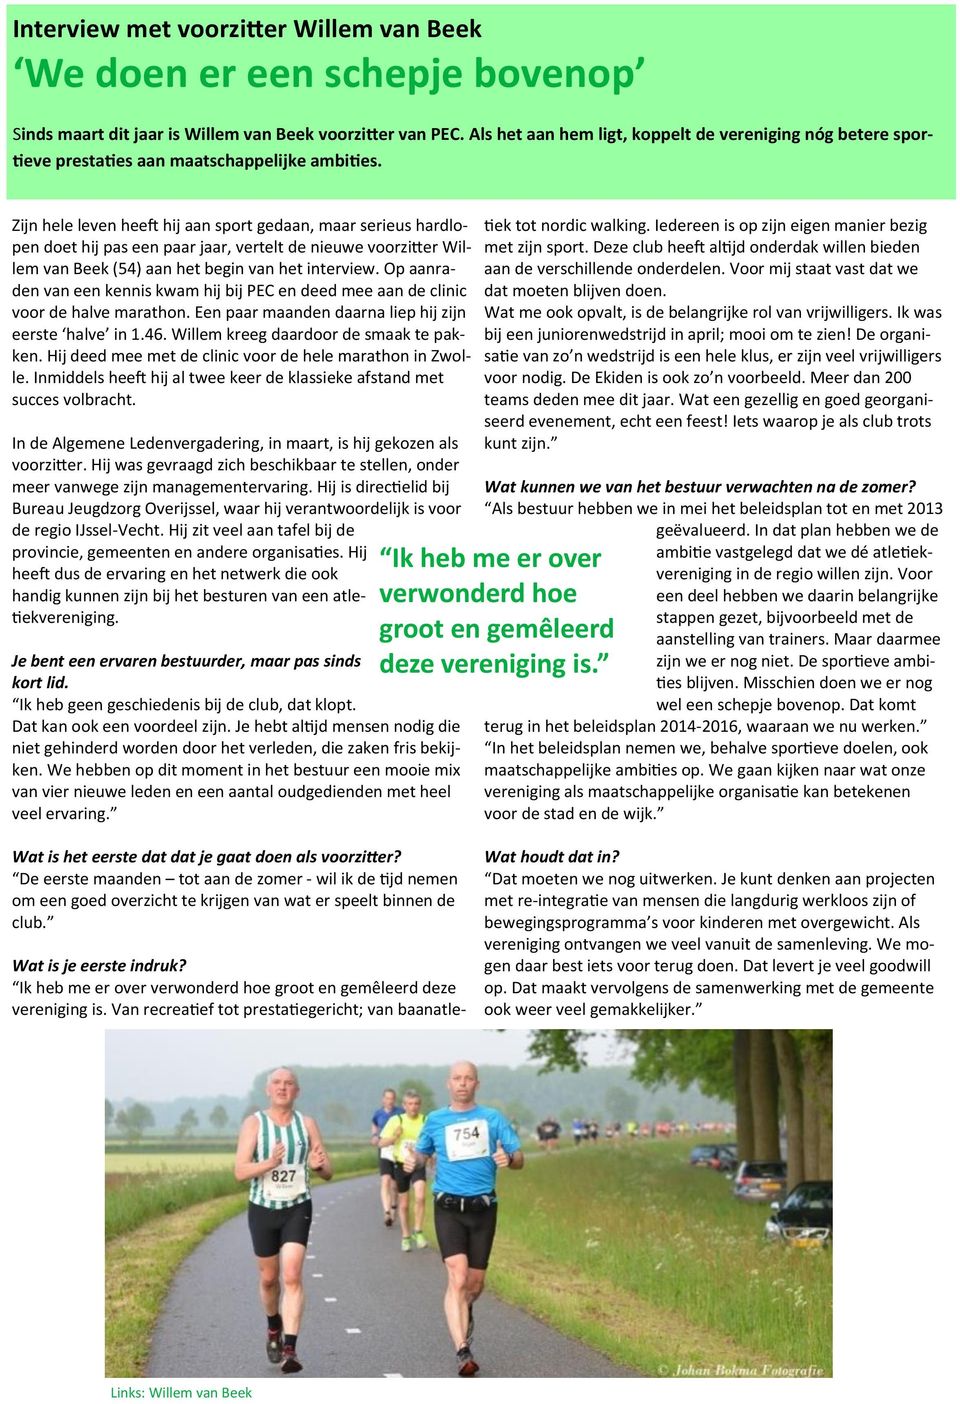 Zijn hele leven heeft hij aan sport gedaan, maar serieus hardlopen doet hij pas een paar jaar, vertelt de nieuwe voorzitter Willem van Beek (54) aan het begin van het interview.